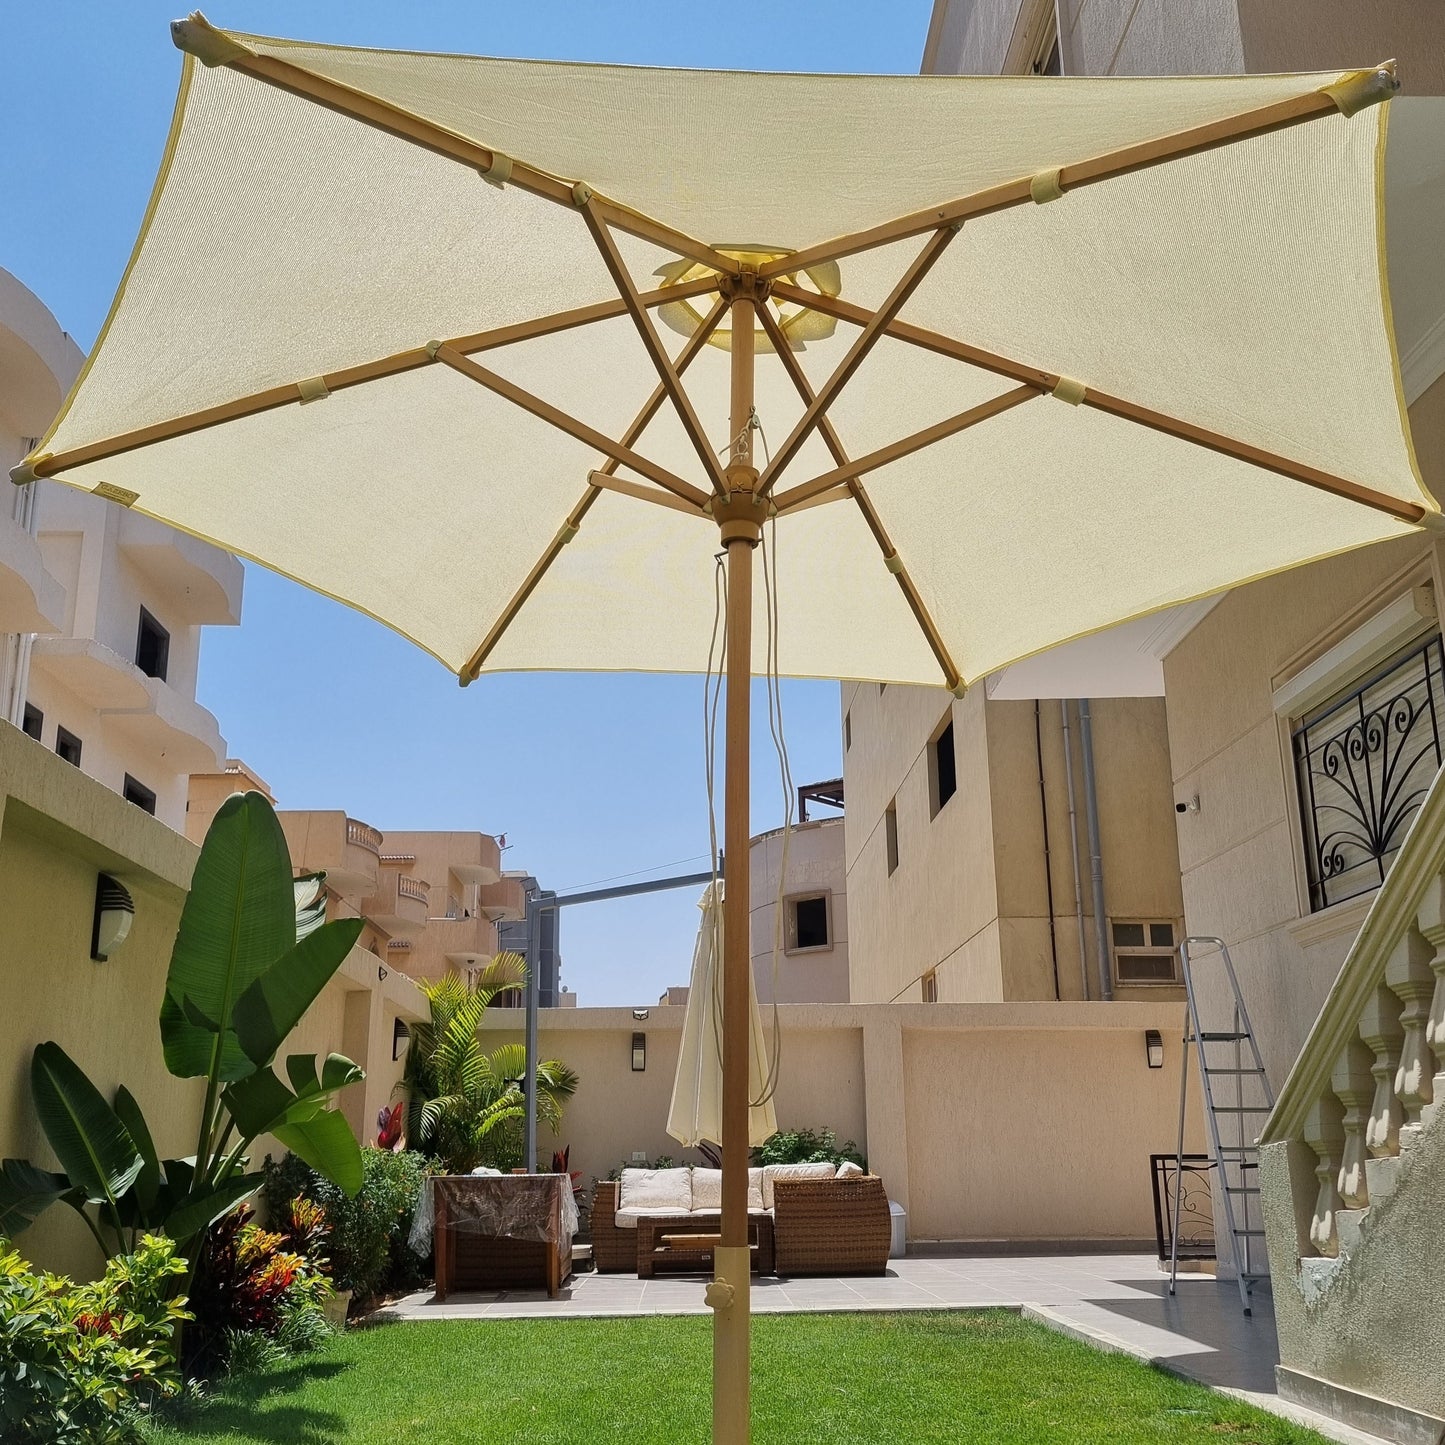 Premium Garden Umbrella - Claro Fabric - Base Included